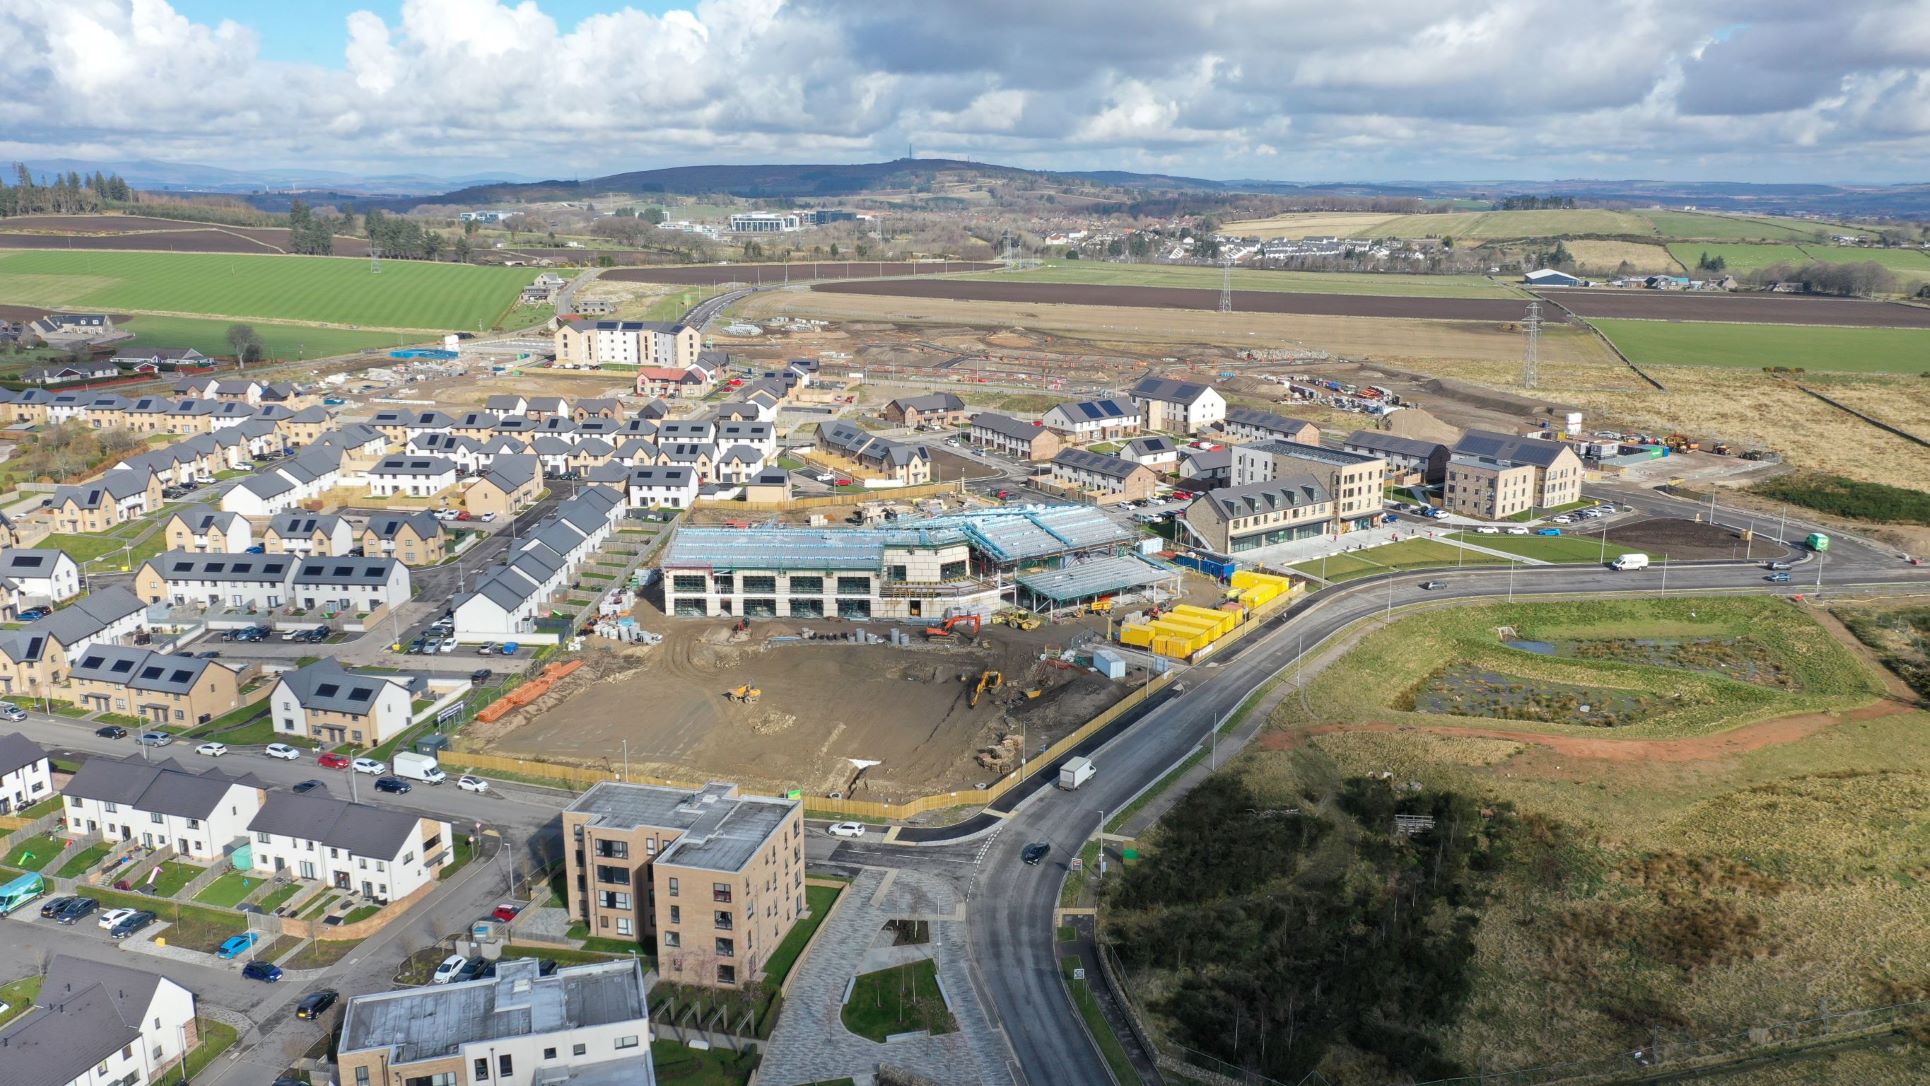 Stricken Aberdeen development site put up for sale